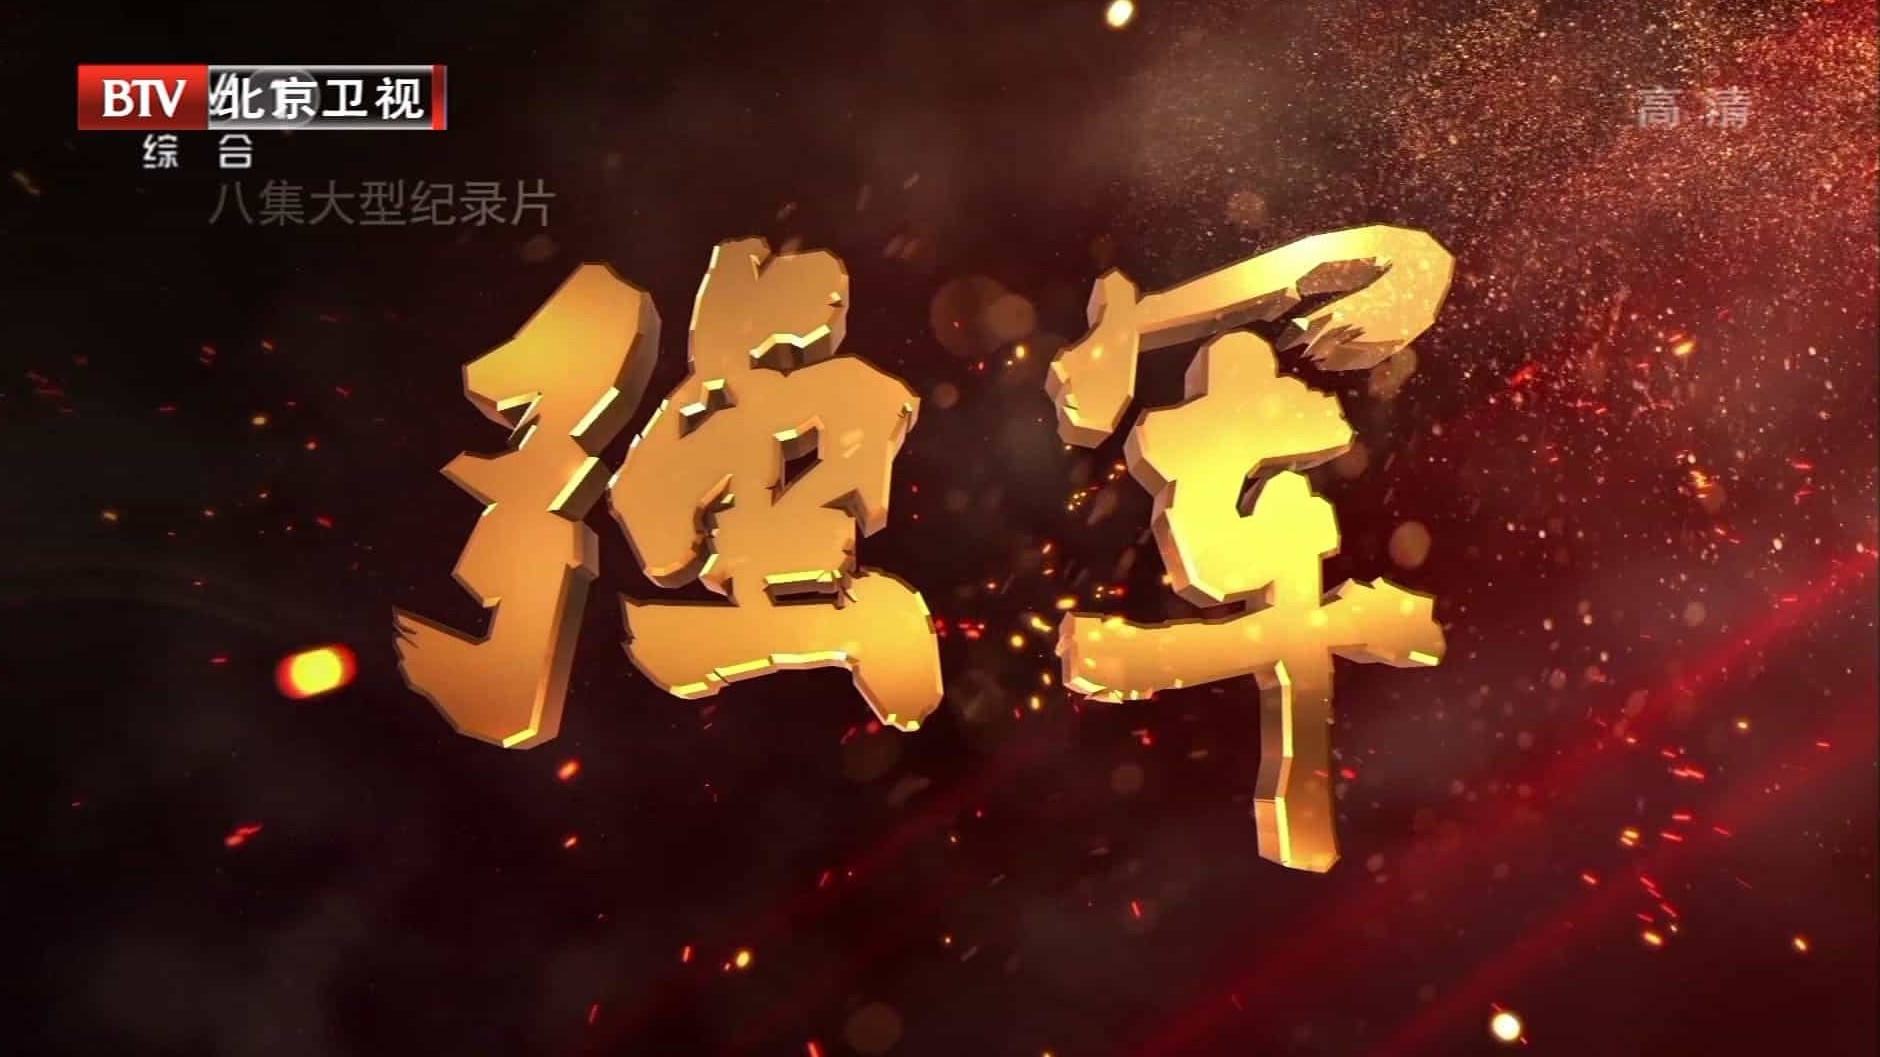 央视纪录片《强军 2017》全8集 汉语中字 纪录片